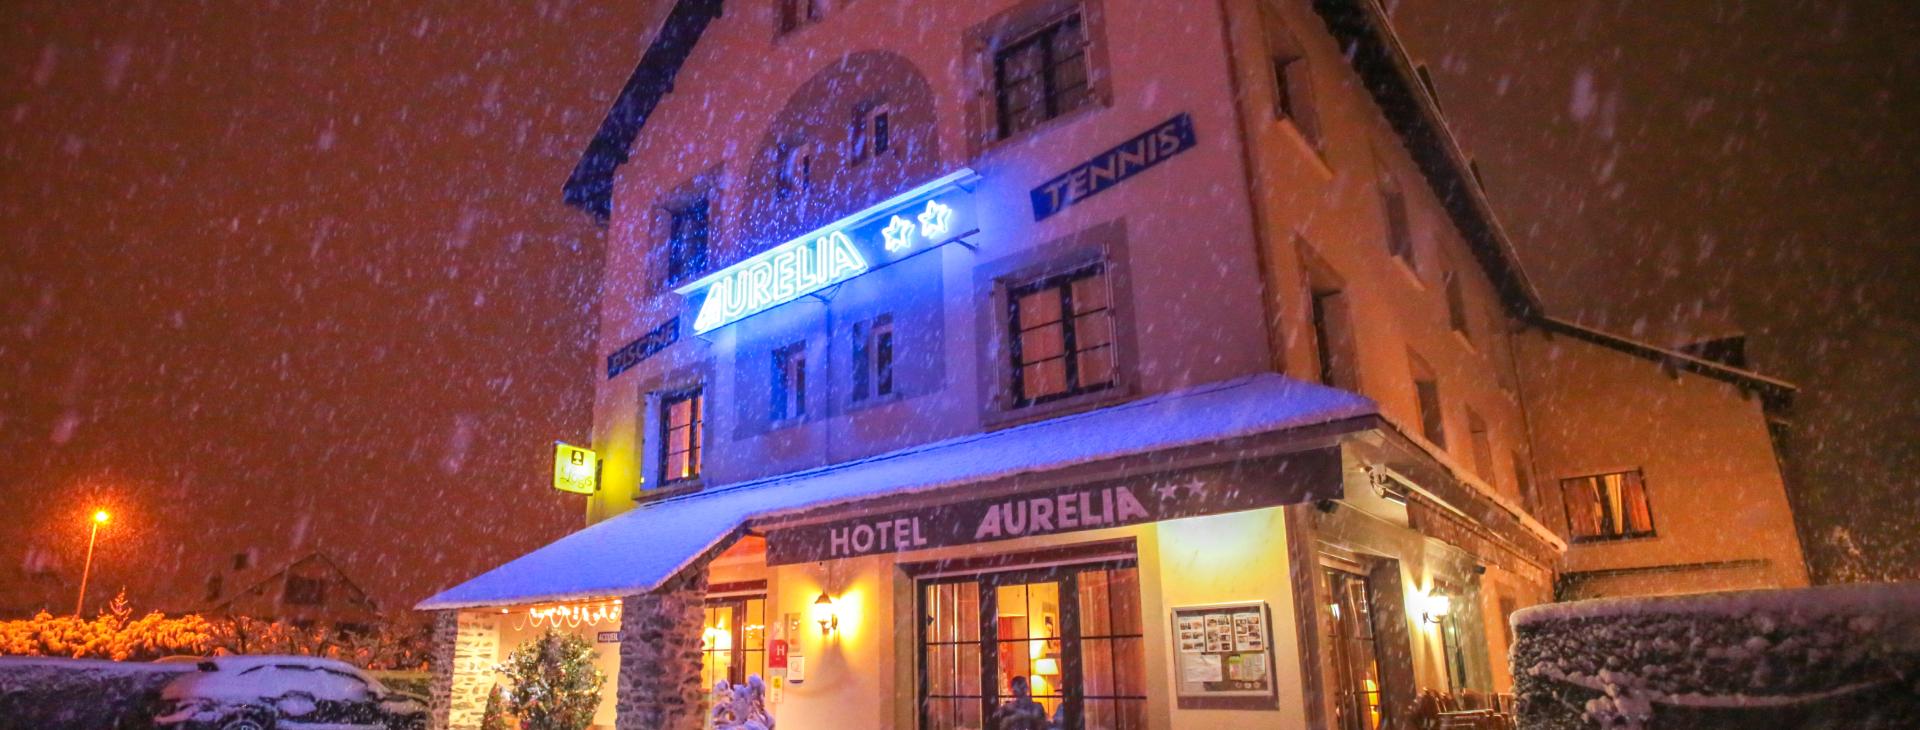 Facade hôtel AURELIA hiver cozy